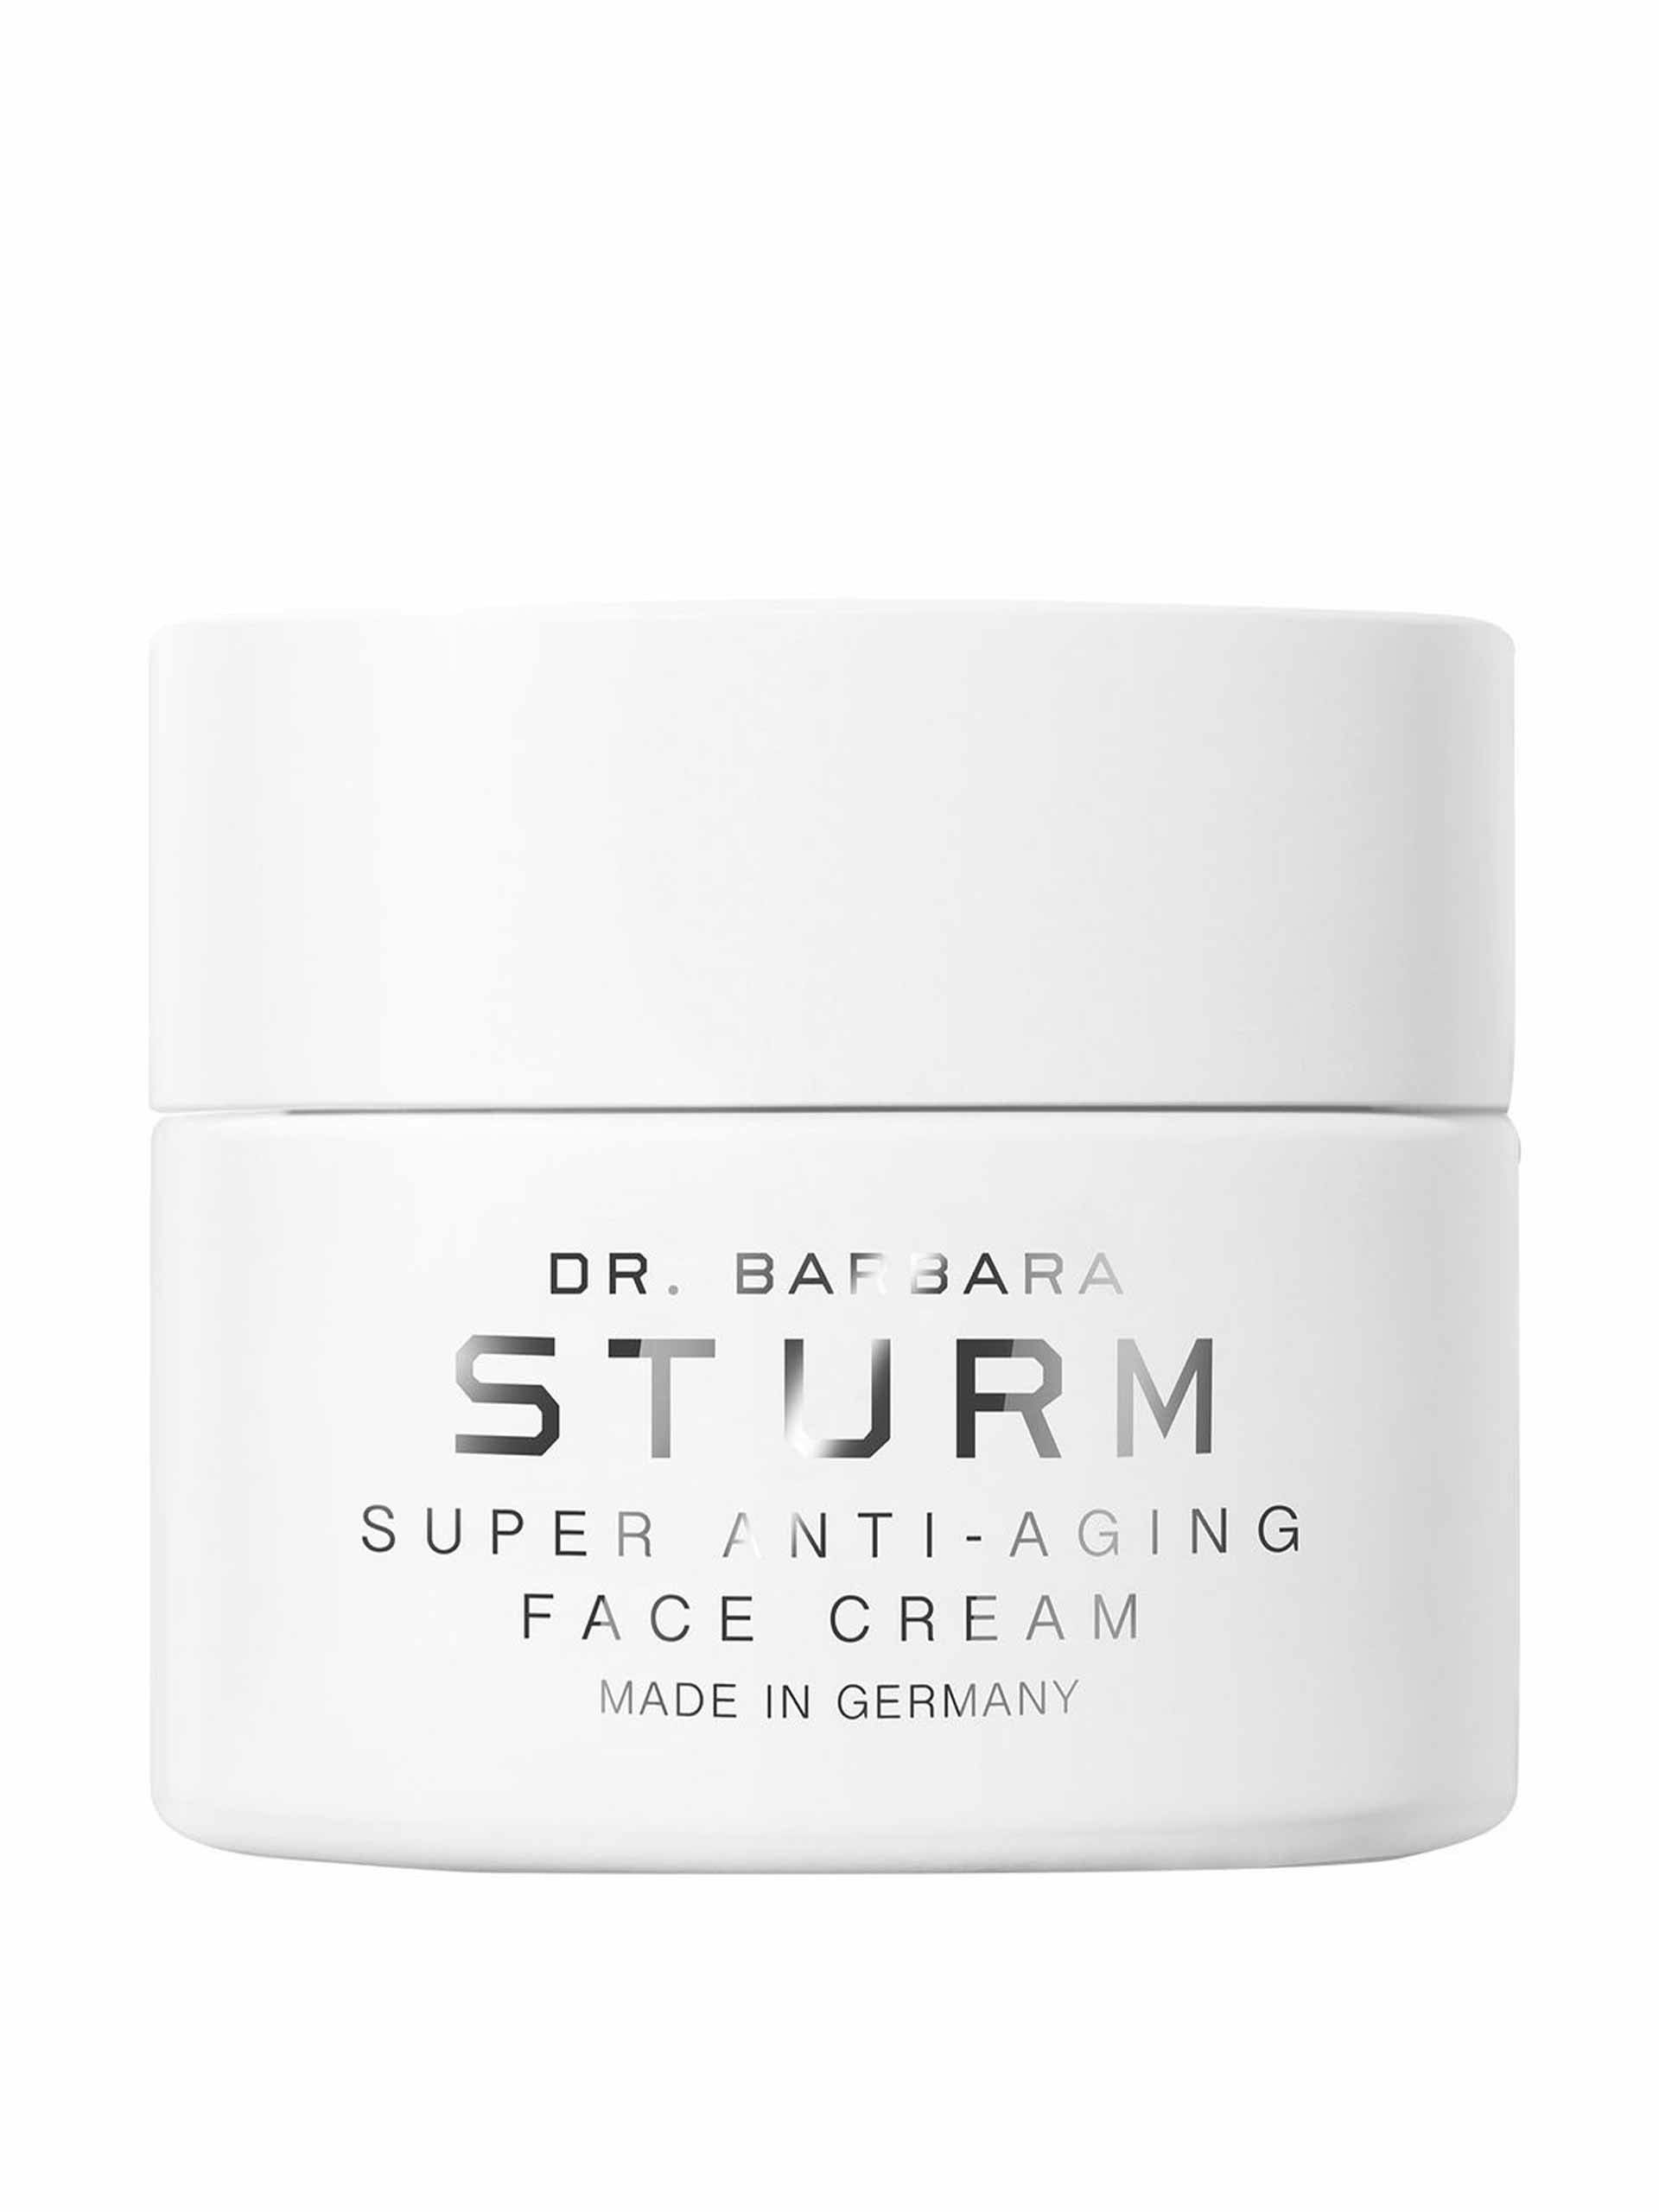 Super anti-aging face cream